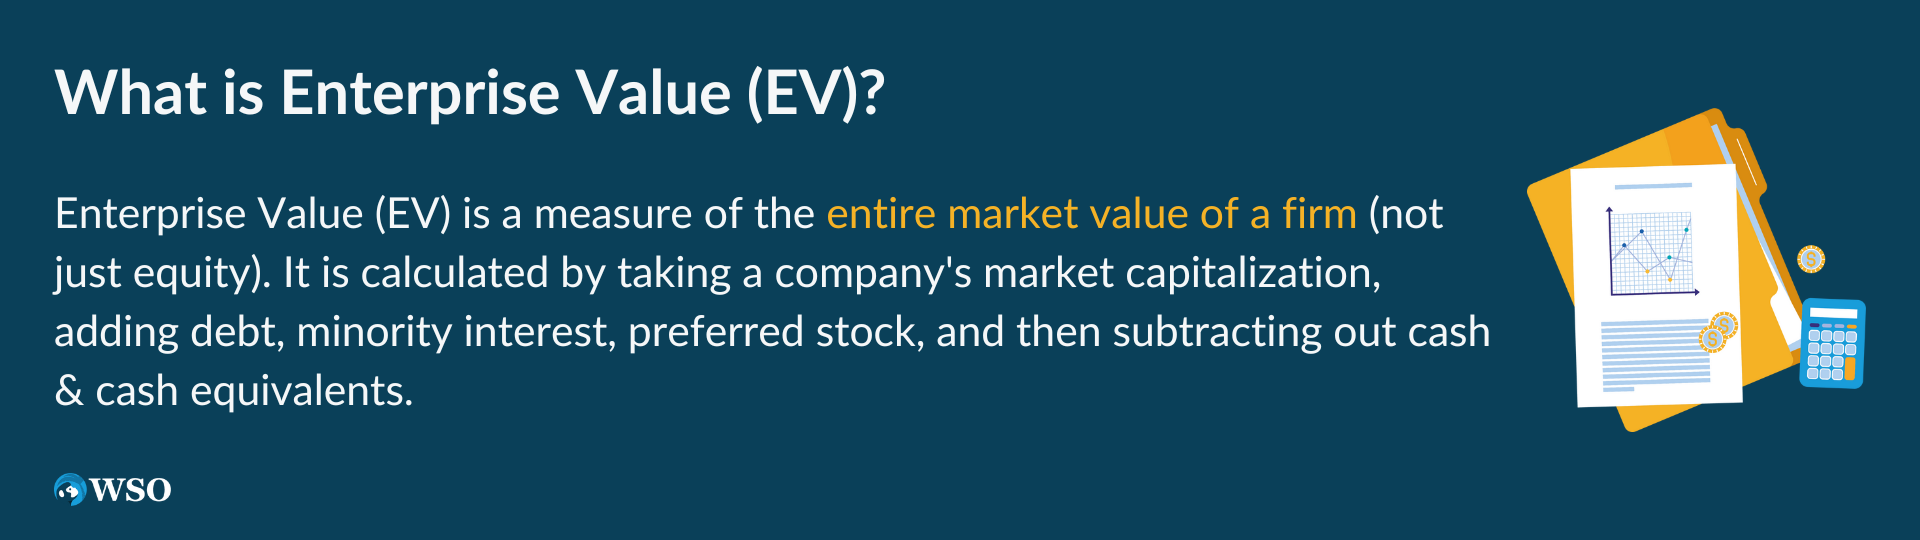 What is Enterprise Value (EV)?